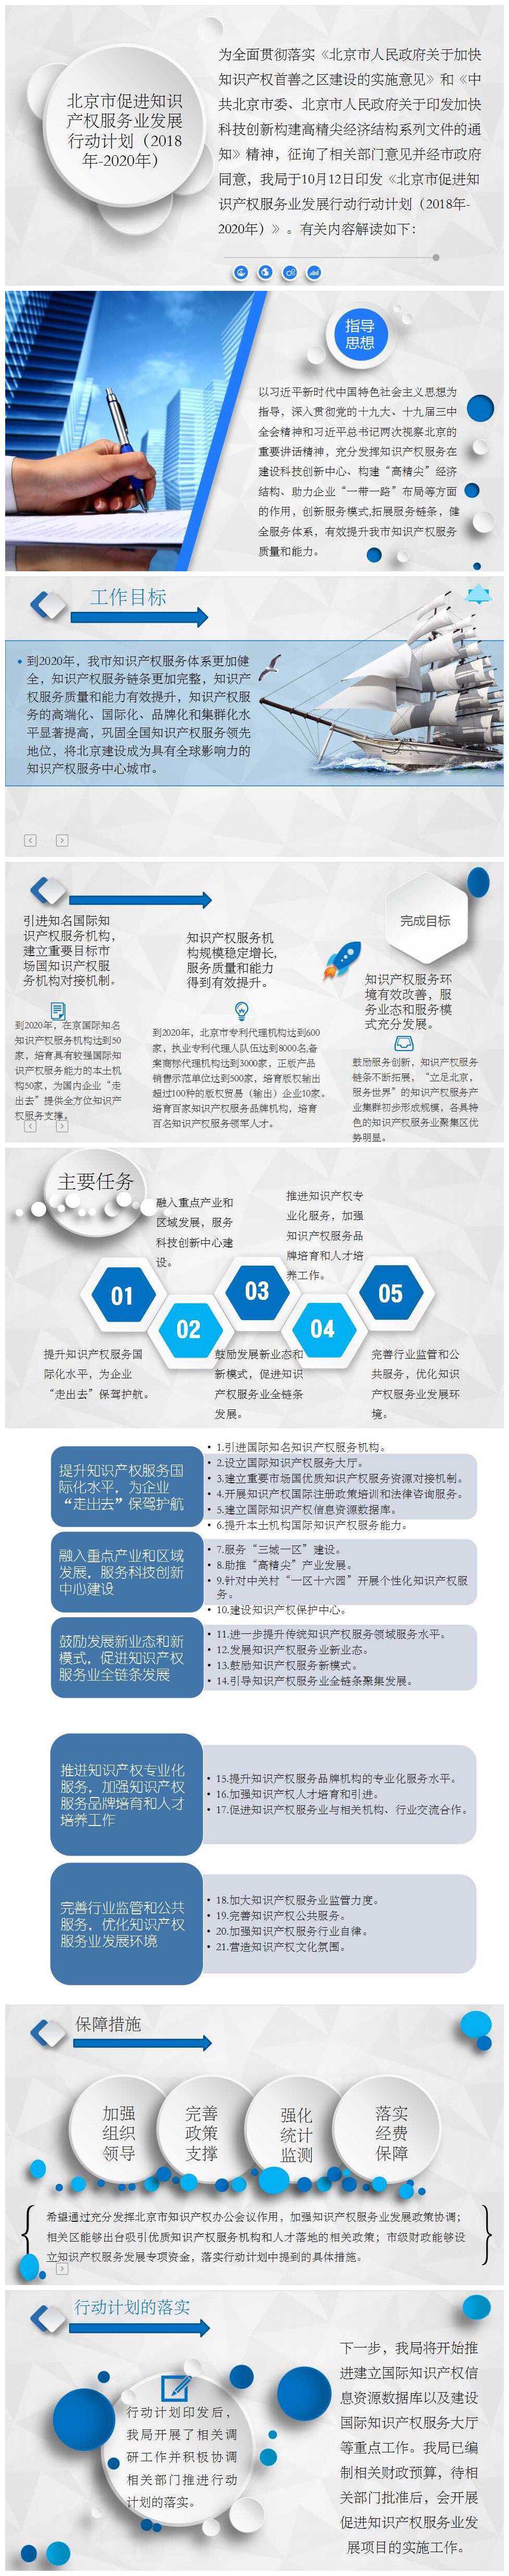 北京市促进知识产权服务业发展行动计划（2018年-2020年）解读.jpg